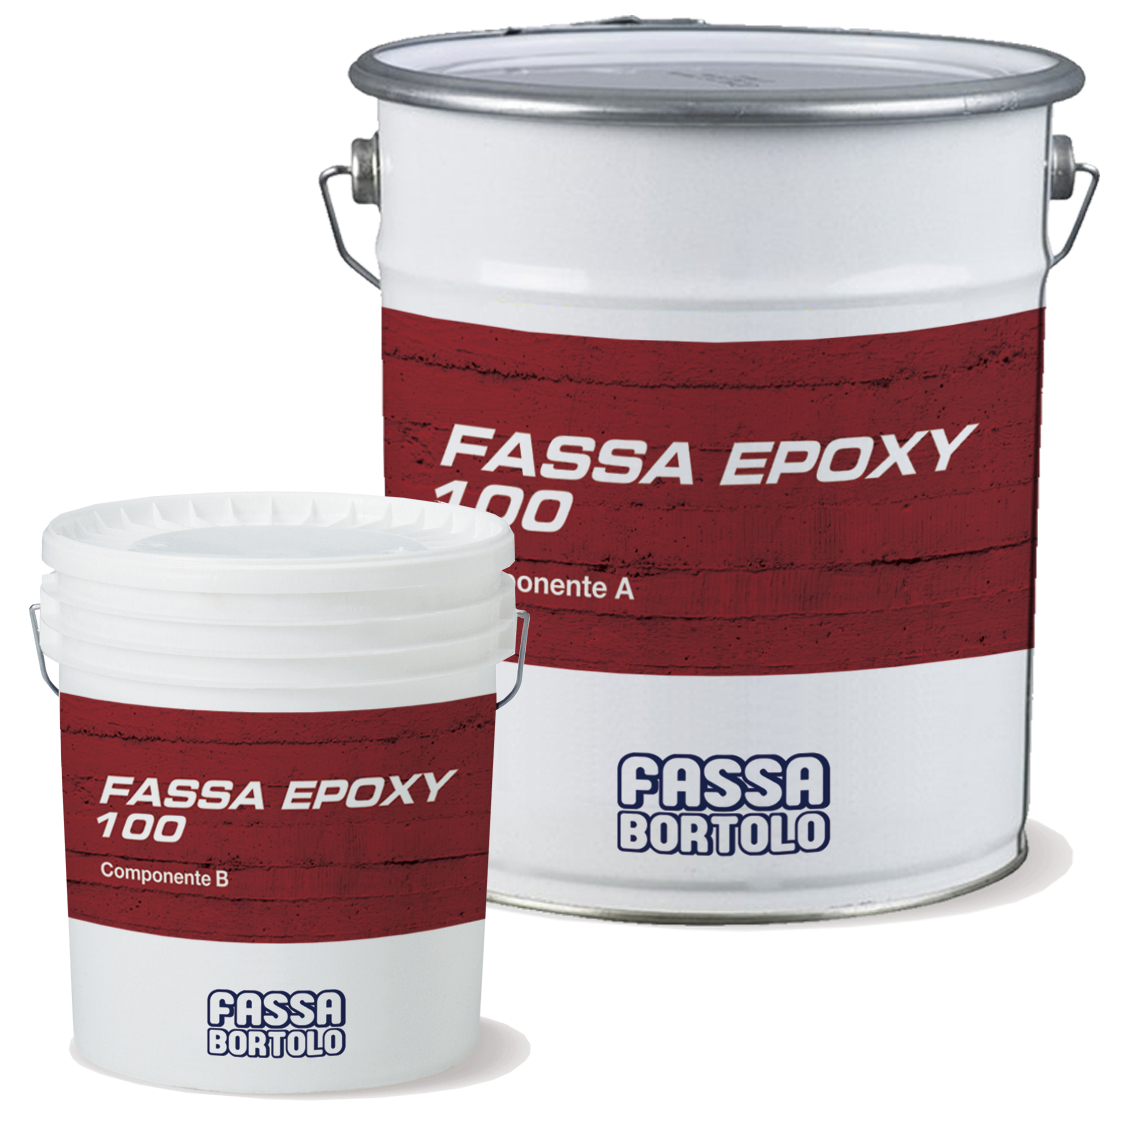 FASSA EPOXY 100: Resina epoxi bicomponente fluida para imprimación e inyecciones